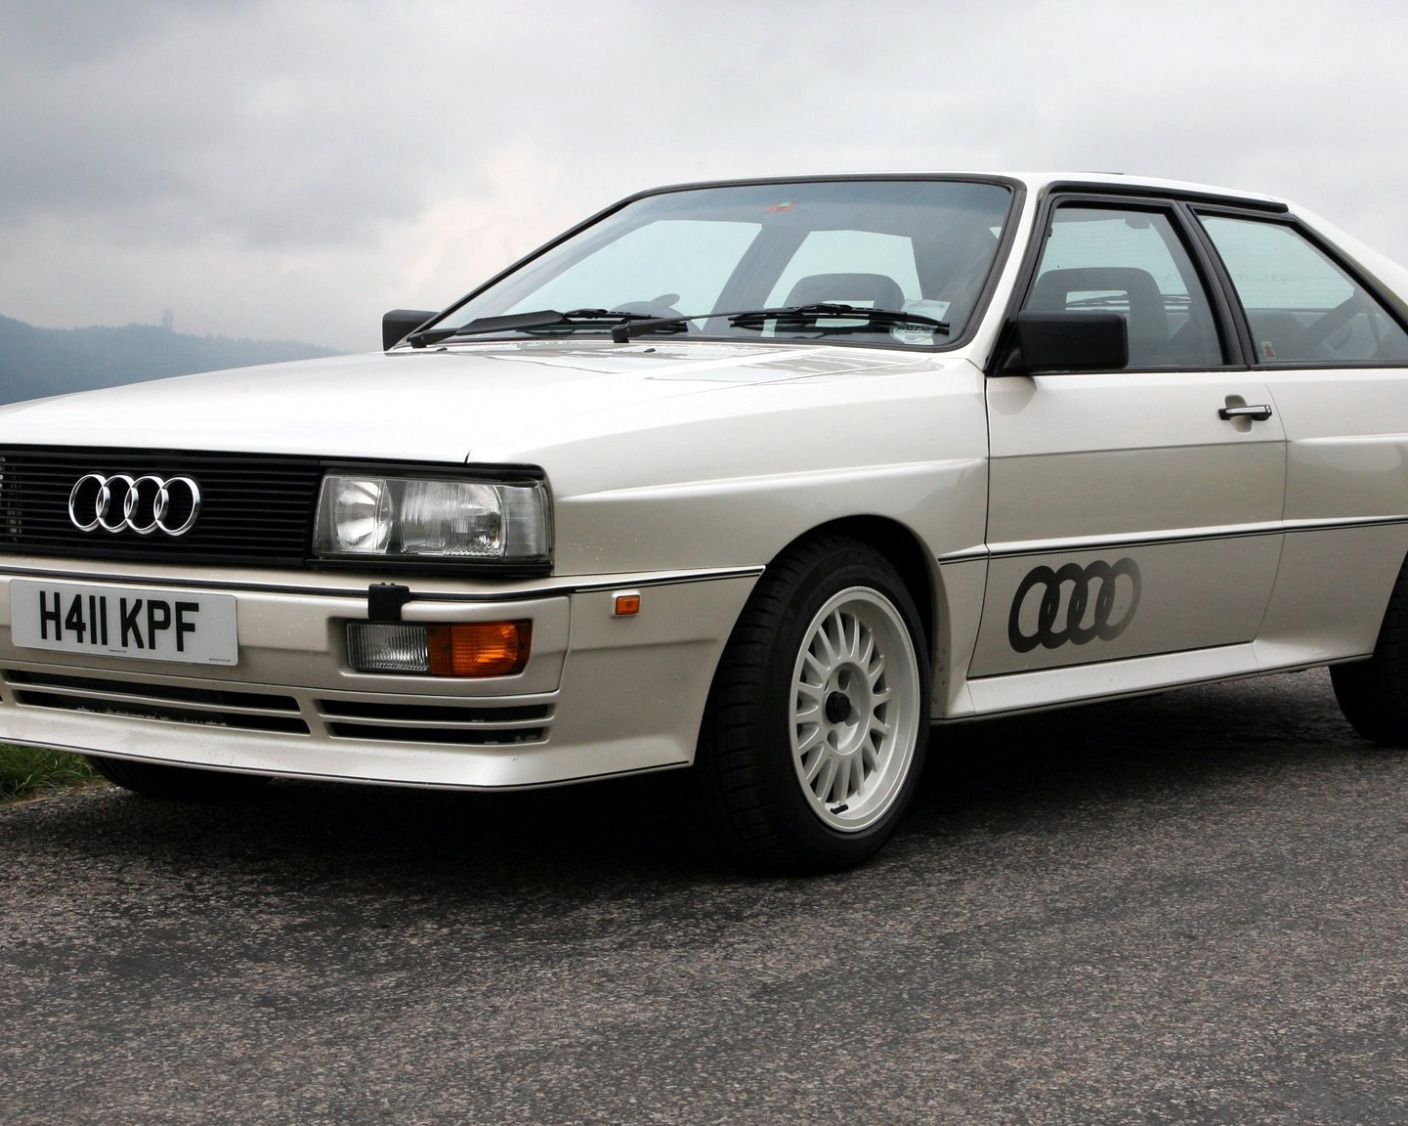 Купить ауди кватро бу. Audi quattro Coupe 1980. Audi 80 ur quattro. Ауди кватро 80 1980. Audi 80 Coupe quattro.